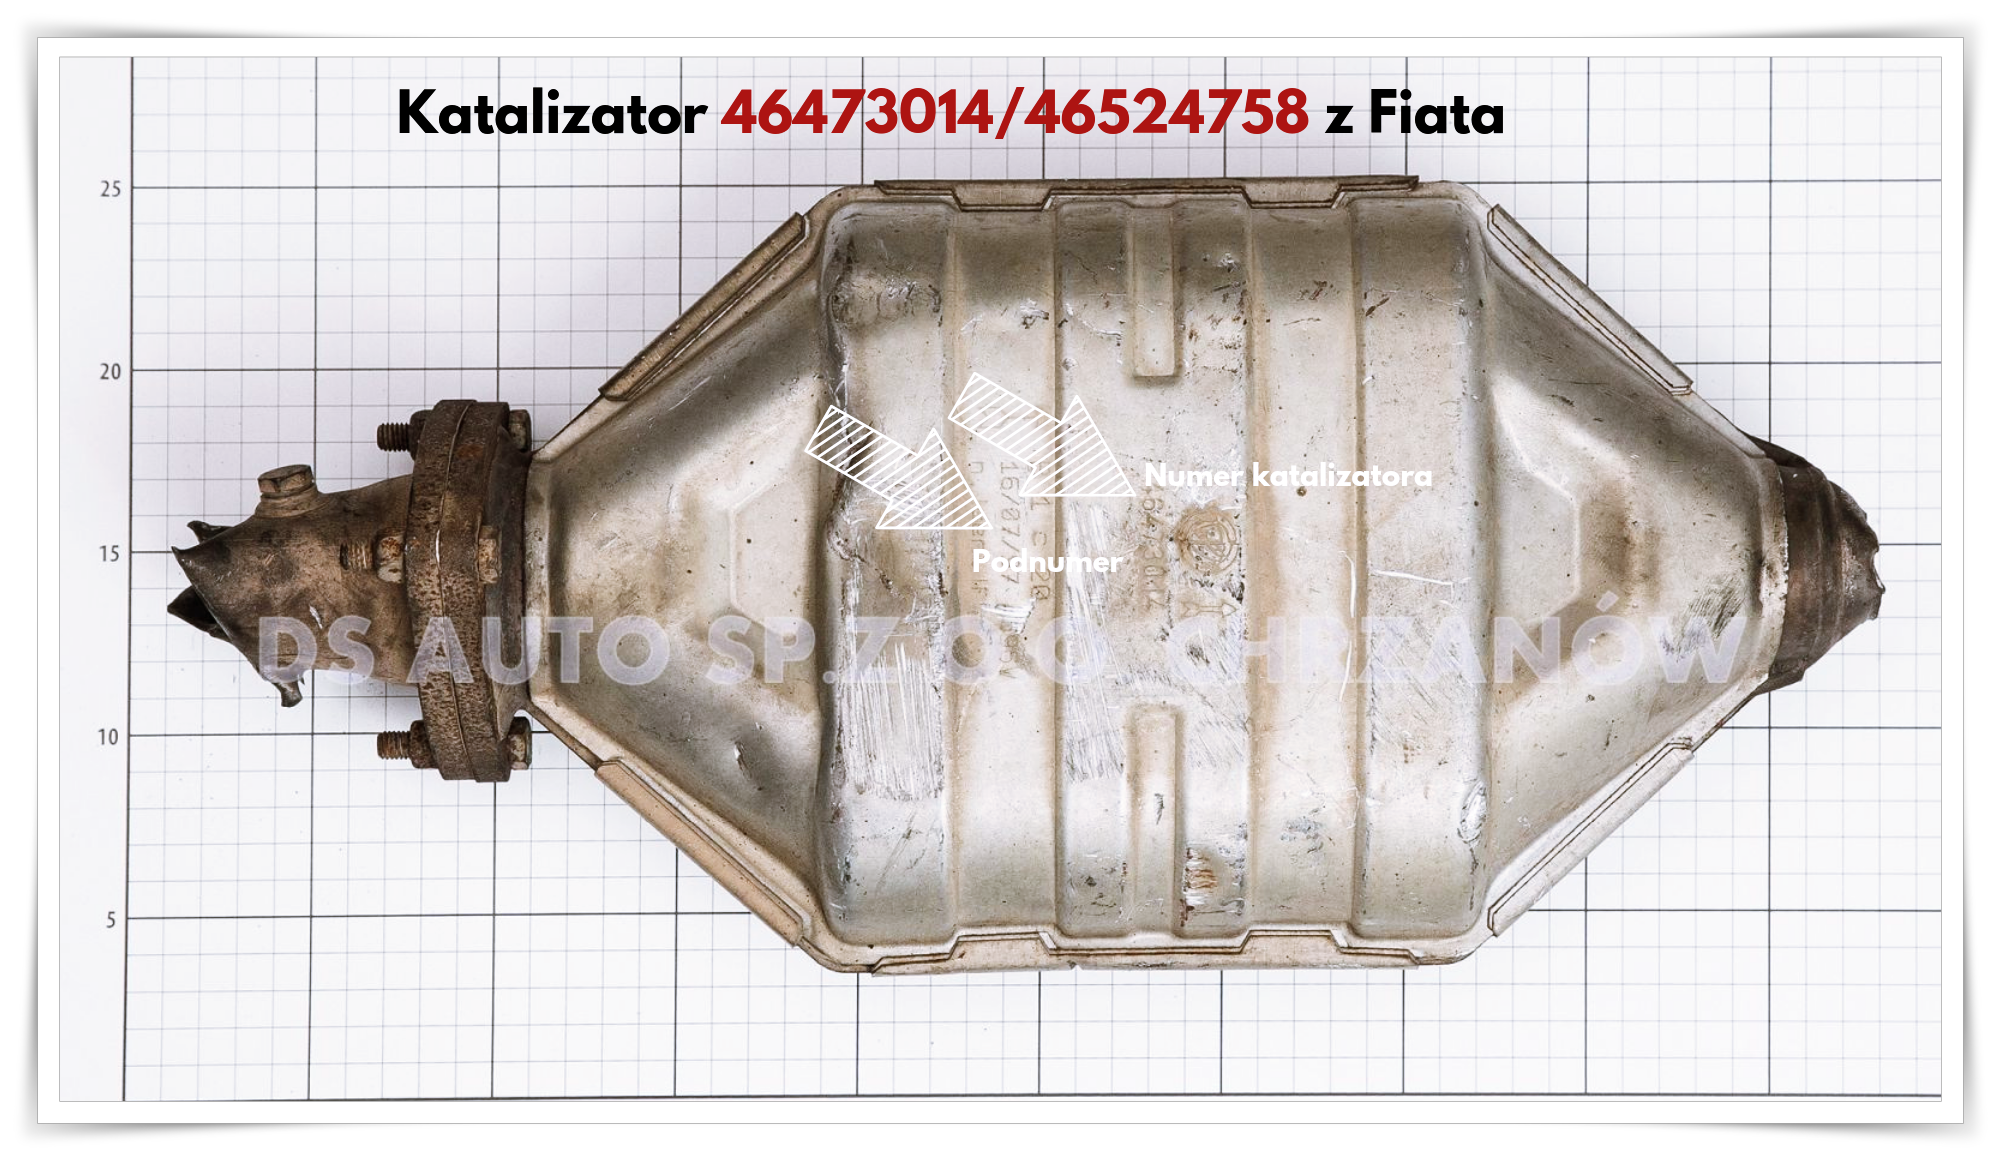 Katalizator 46473014/46524758 Z Modelu Fiat Brava - Katalizatory Chrzanów